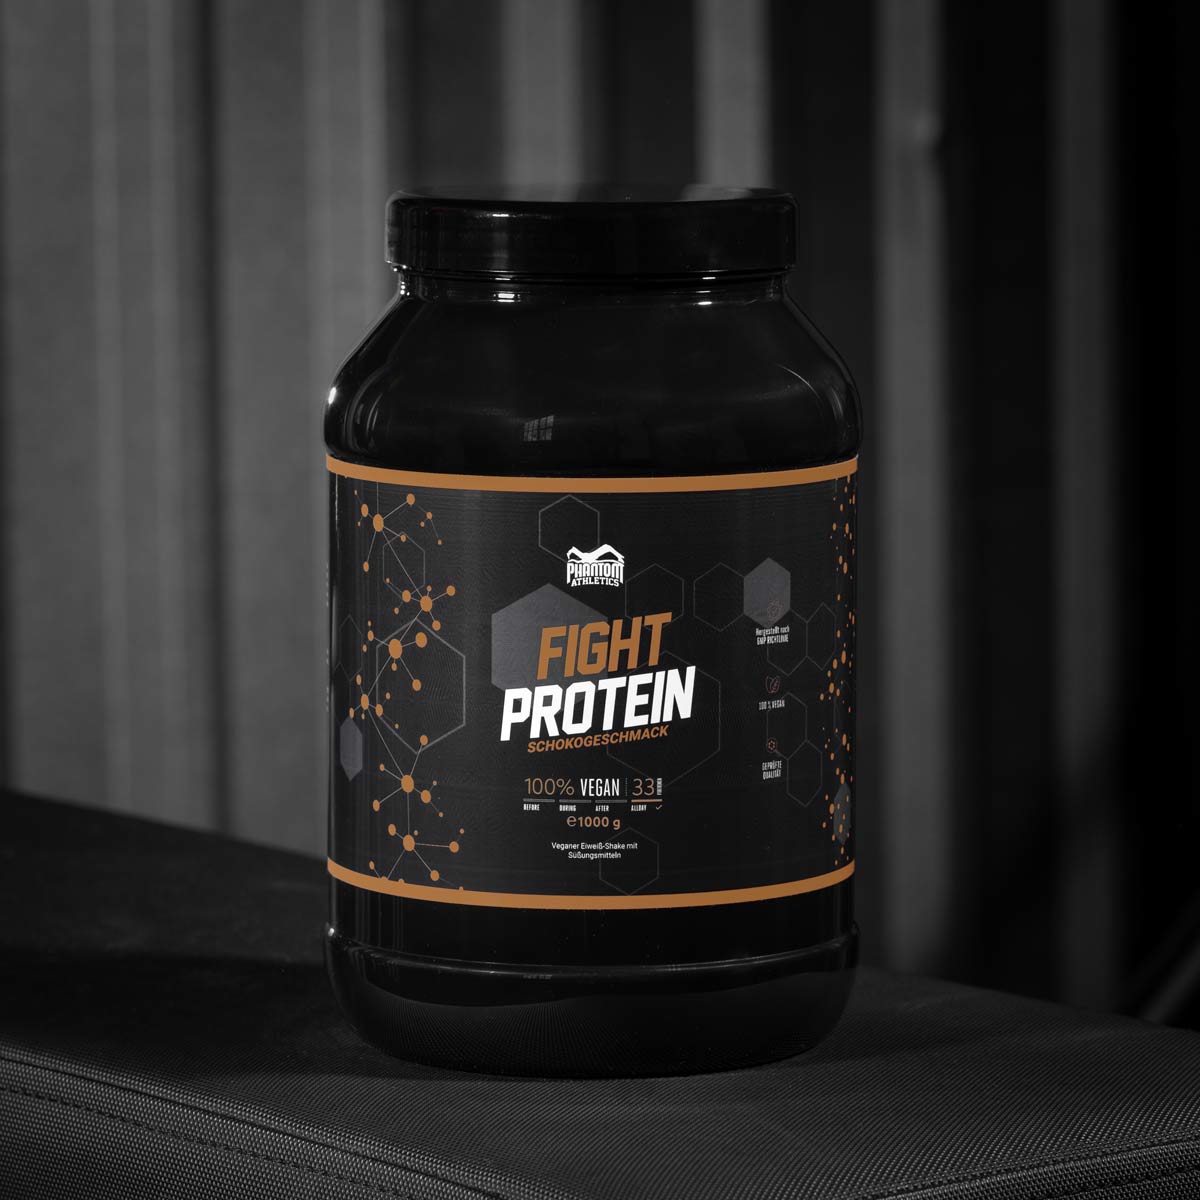 Phantom FIGHT Protein für Kampfsportler mit Schoko Geschmack im Gym.